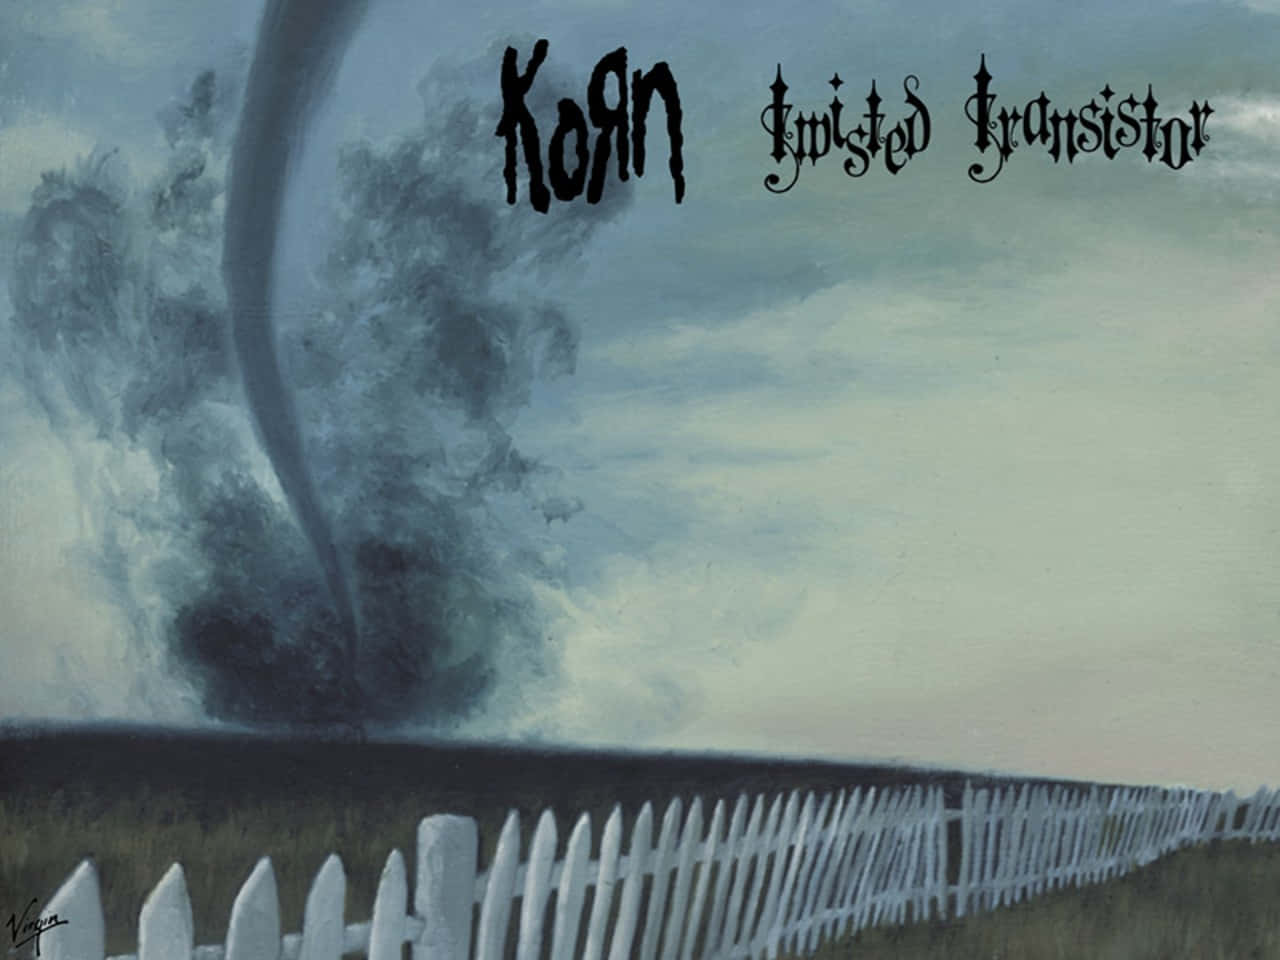 Korn 1280 X 960 Wallpaper